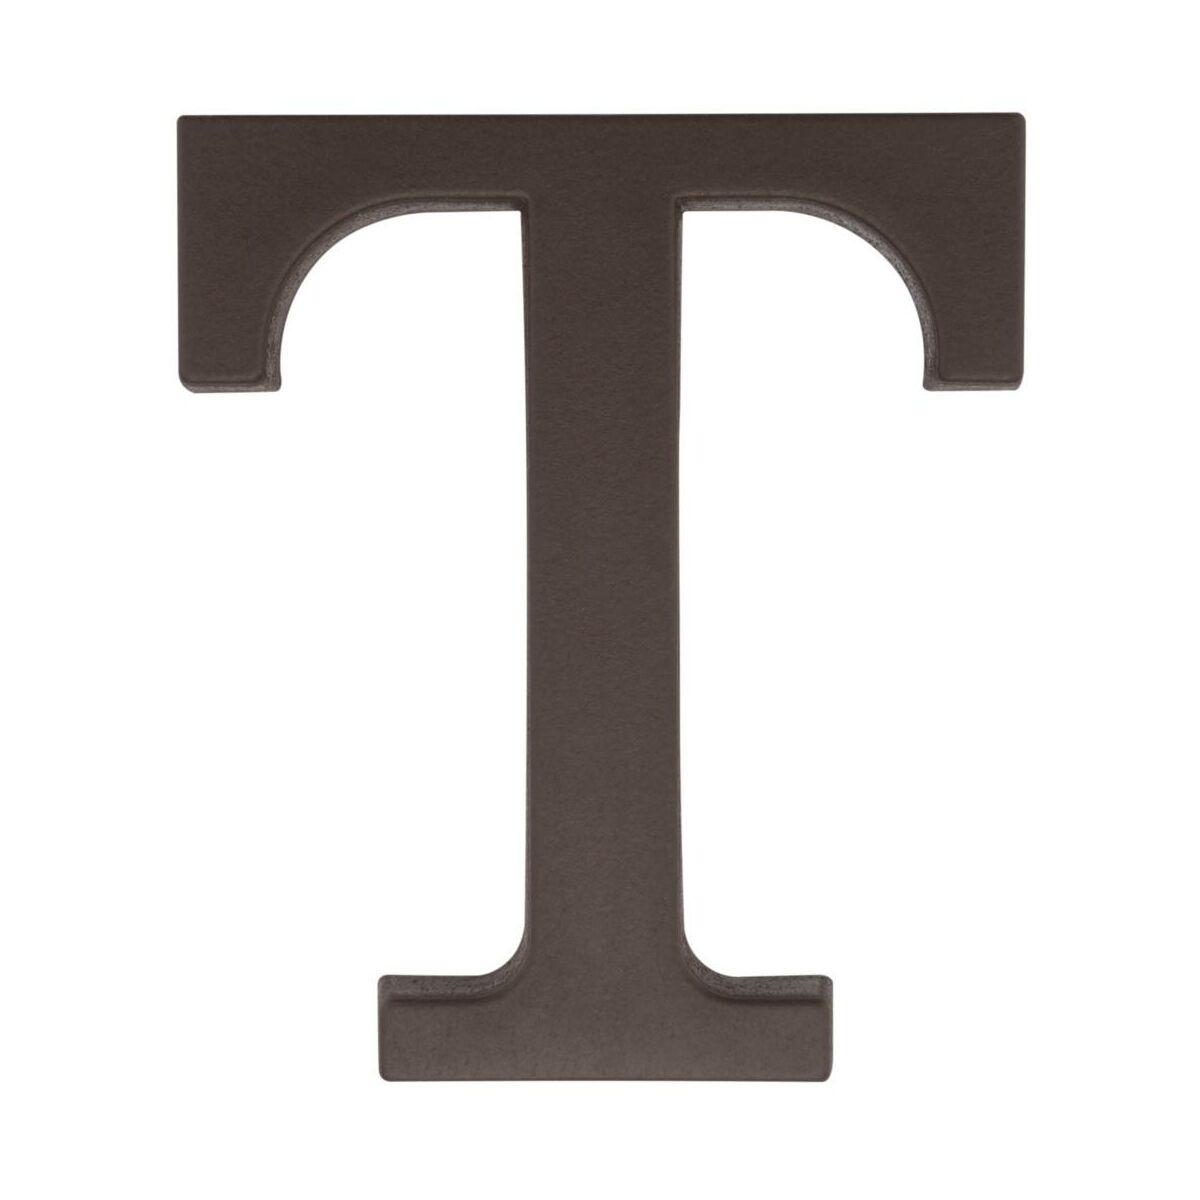 Litera T wys.9 cm plastikowa brązowa